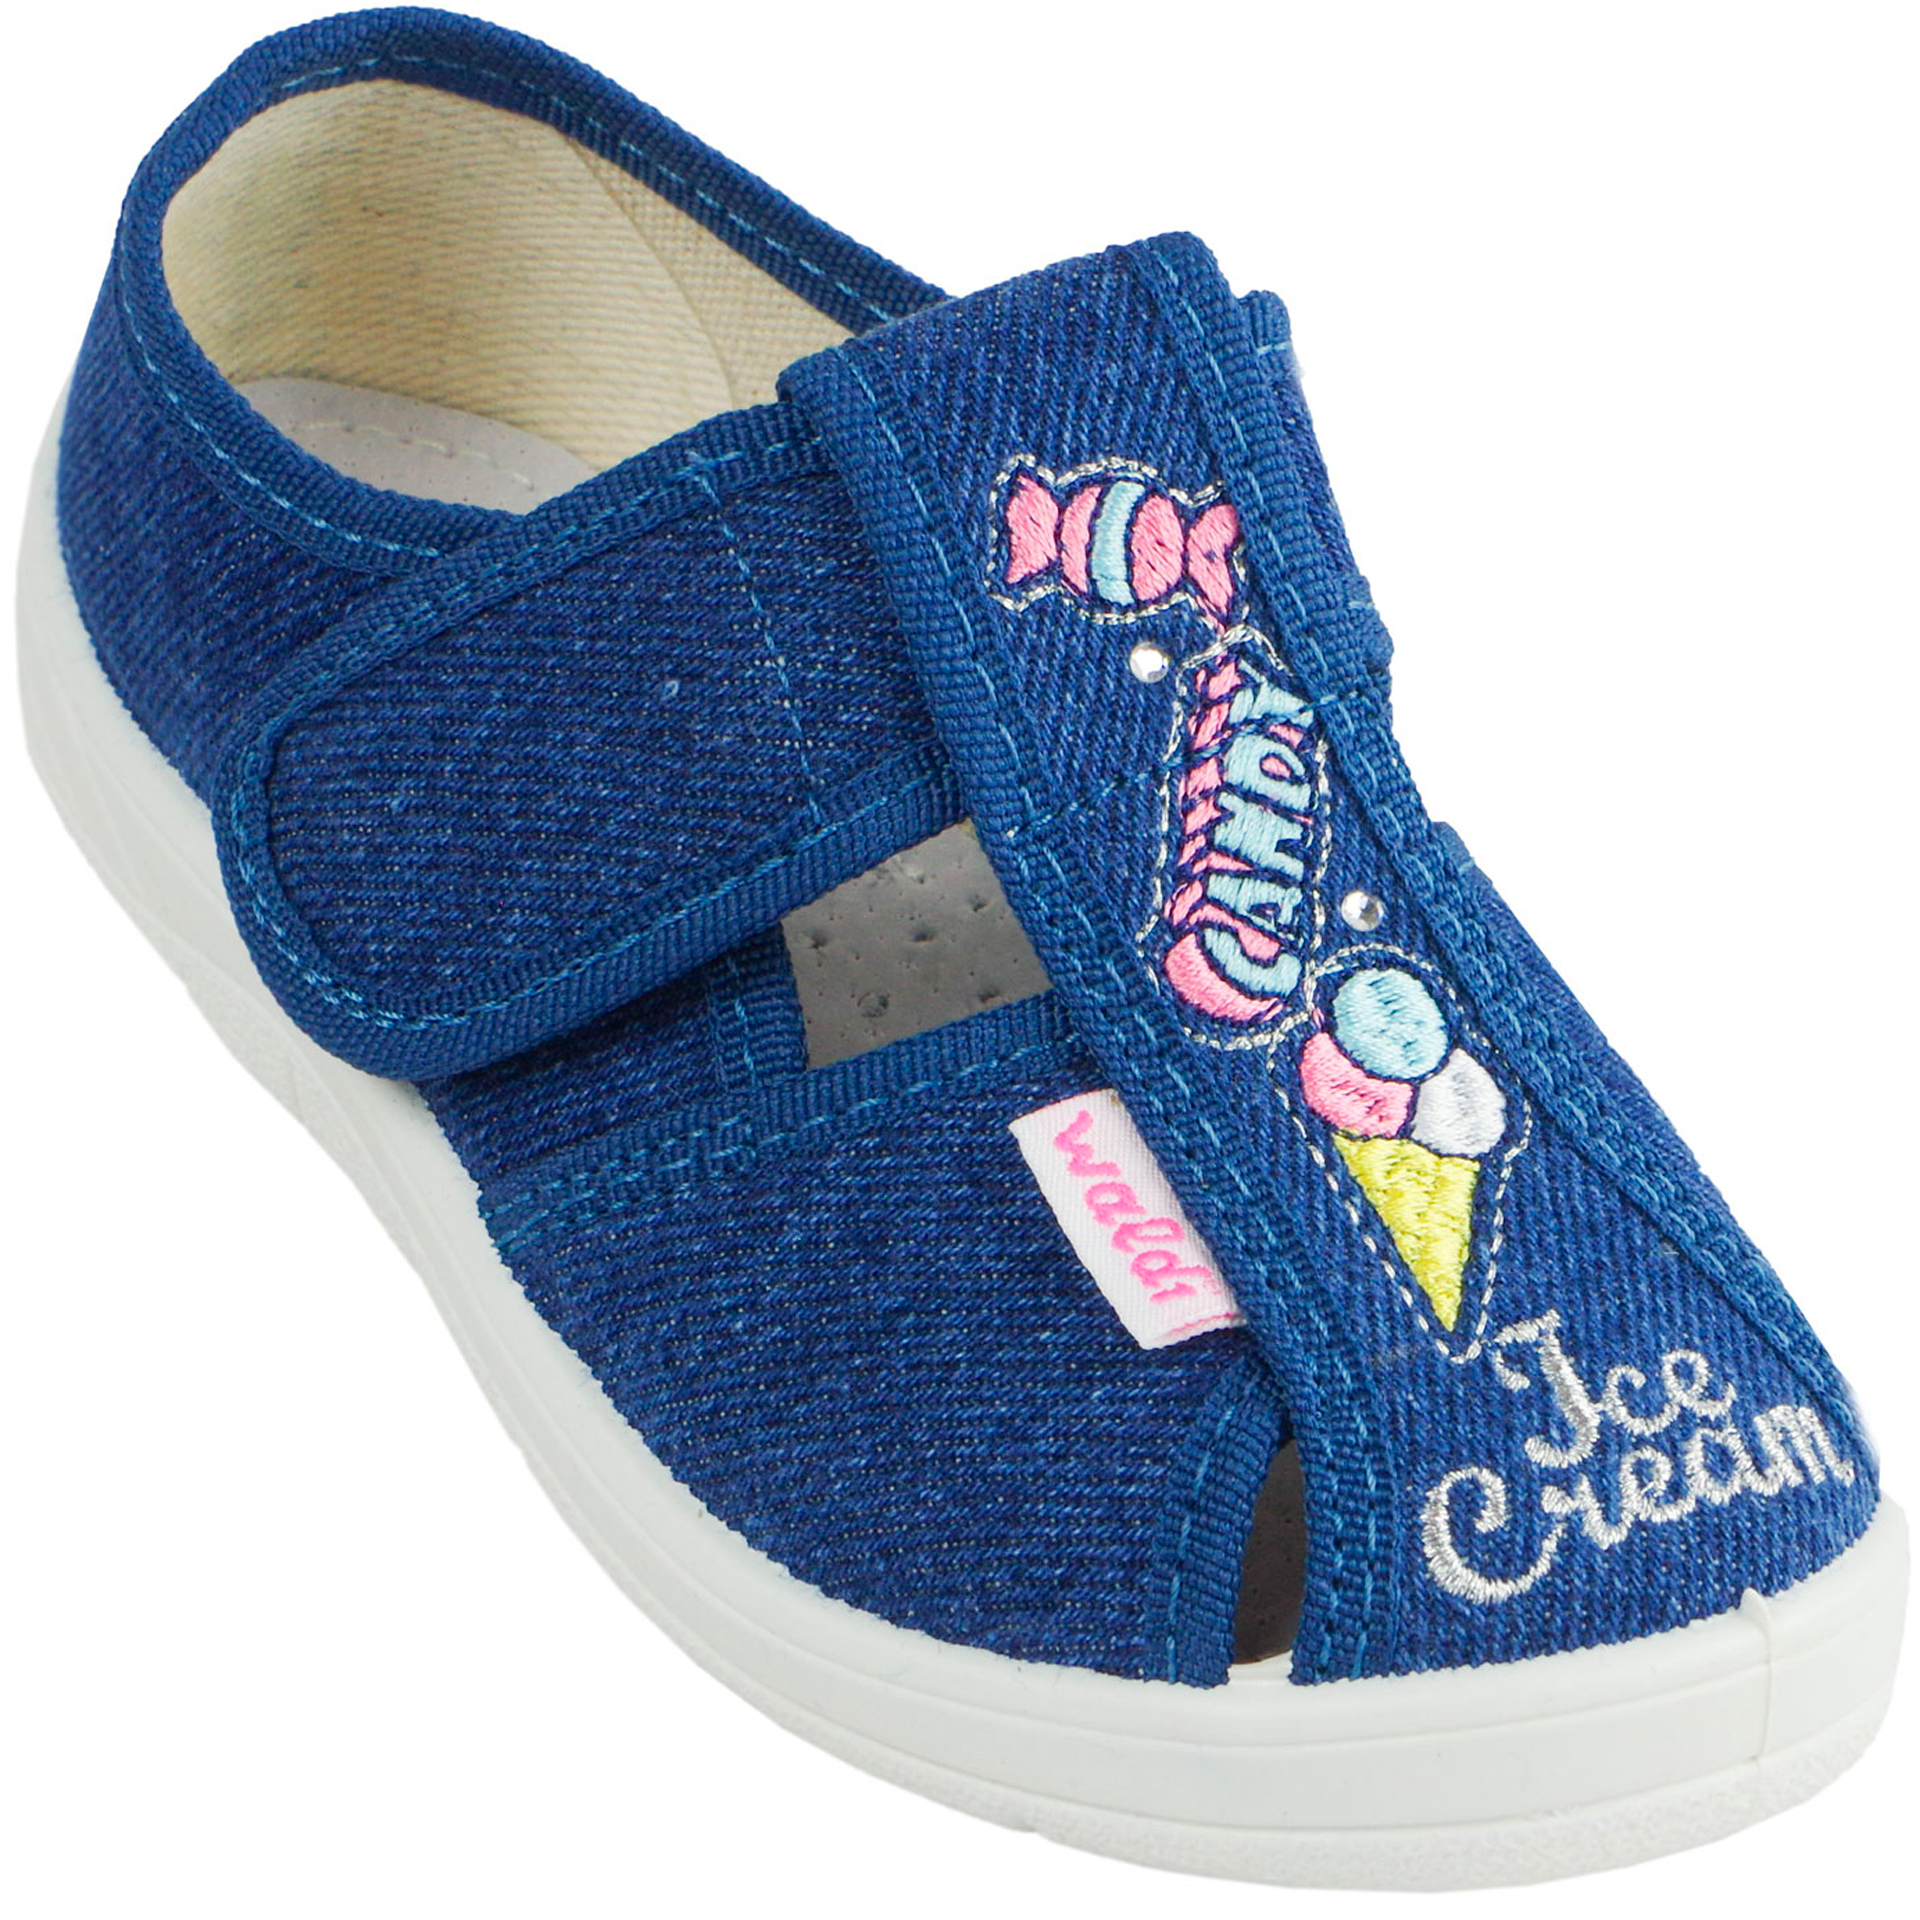 Текстильная обувь для девочек Тапочки Джинс (2040) цвет Синий 24-30 размеры – Sole Kids